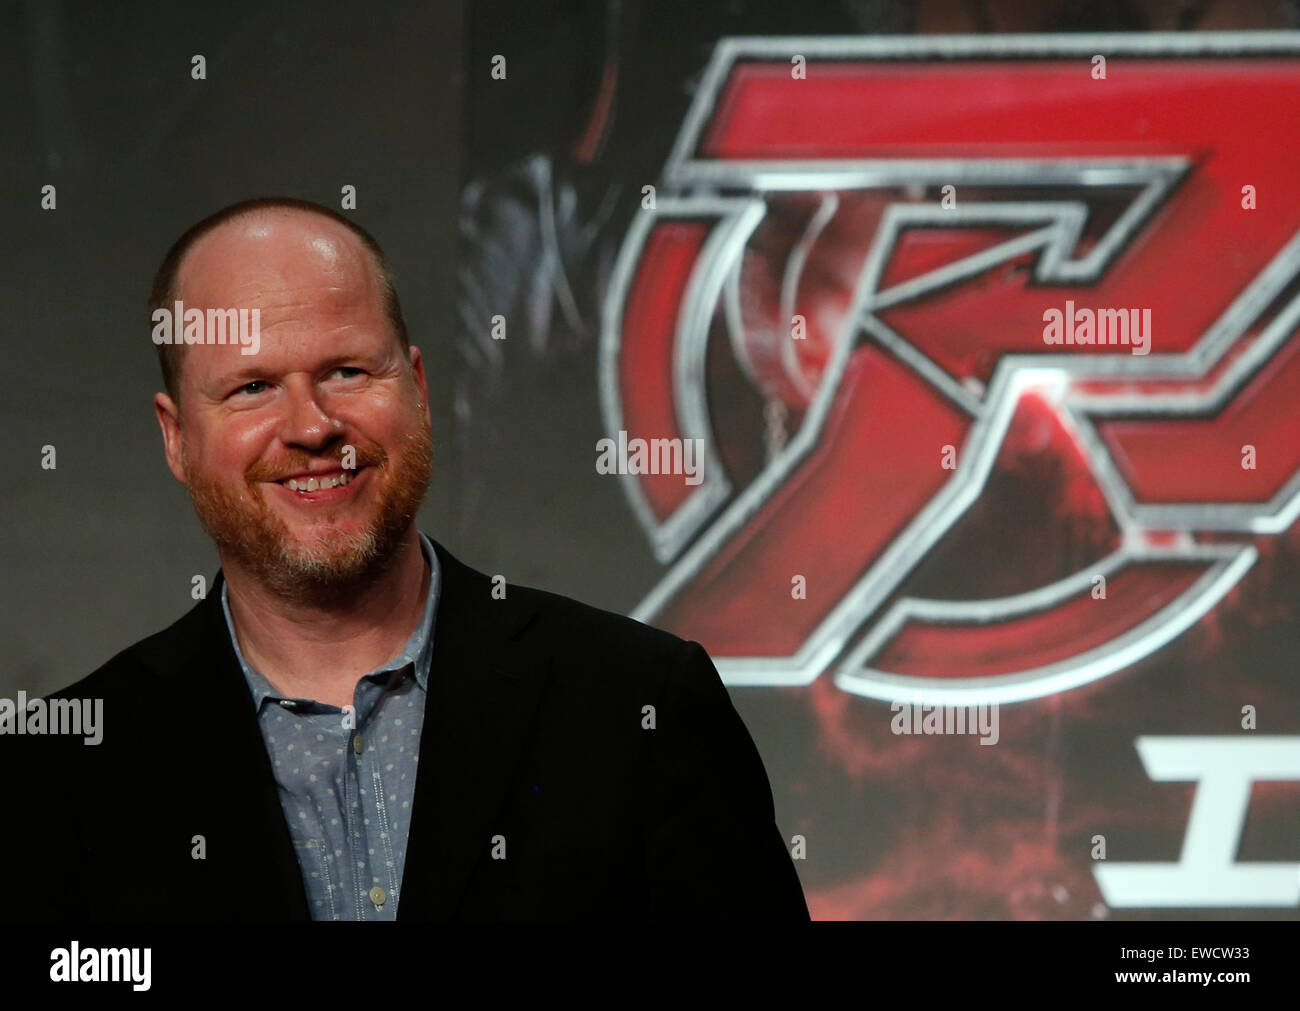 Tokio, Japan. 23. Juni 2015. Regisseur Joss Whedon besucht eine Premierenveranstaltung für seinen neuen Film "The Avengers: Age of Ultron" in Tokio, Japan, 23. Juni 2015. Der Film wird für die Öffentlichkeit vom 4. Juli in Japan gezeigt. Bildnachweis: Stringer/Xinhua/Alamy Live-Nachrichten Stockfoto